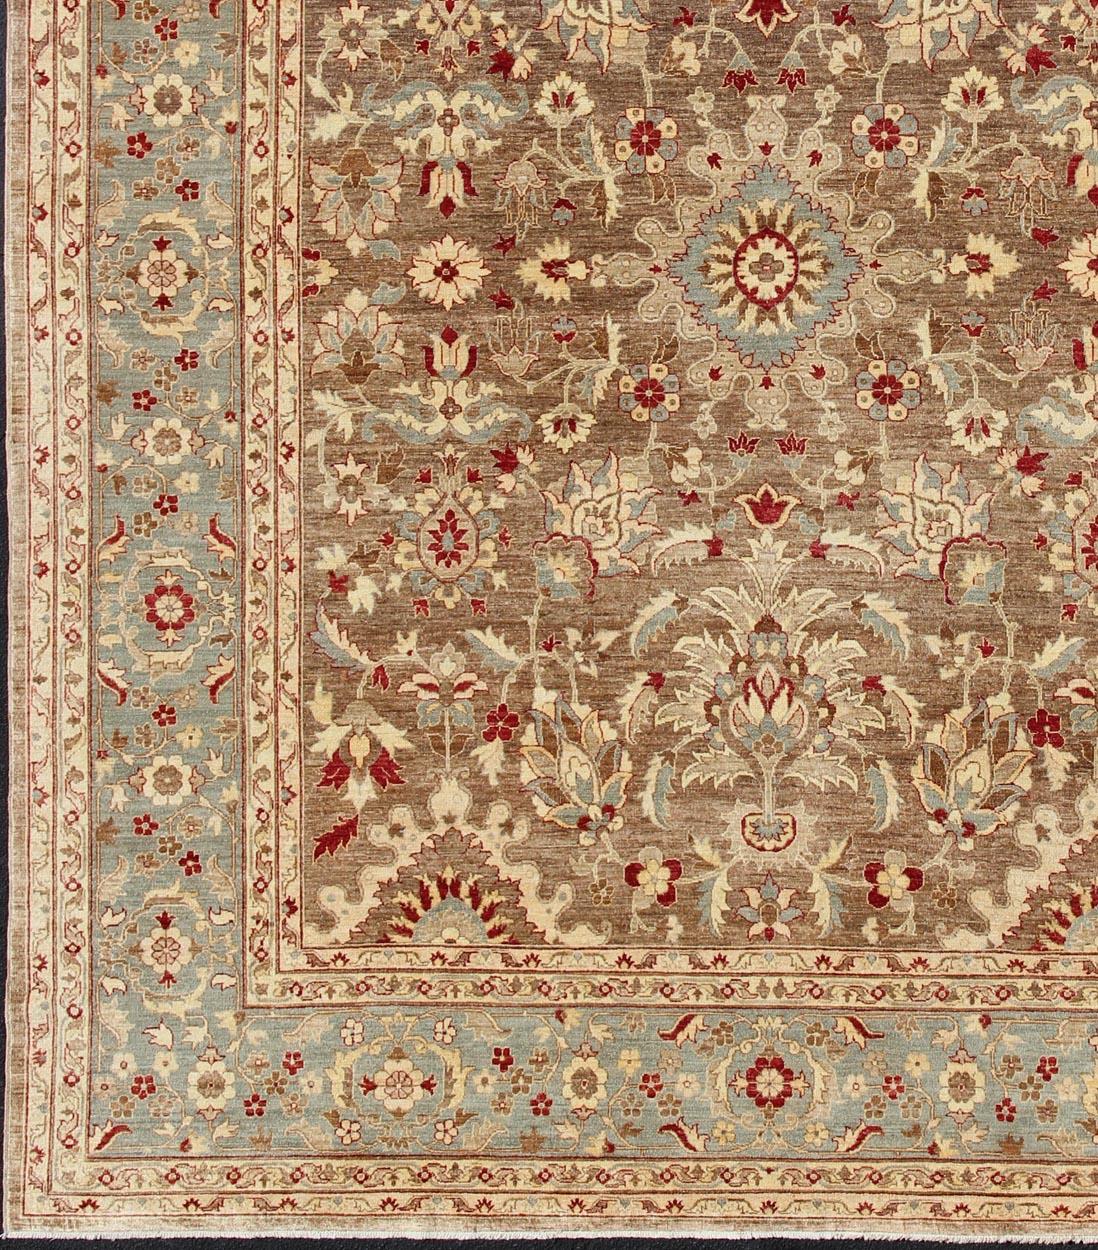 Grand tapis Sultanabad Design, tapis 16-0307, pays d'origine / type : Afghanistan / Sultanabad

Mesures : 11'10 x 14'9.

Ce tapis Sultanabad d'Afghanistan présente un motif traditionnel élaboré dans des tons de brun, rouge, taupe et rouge.
